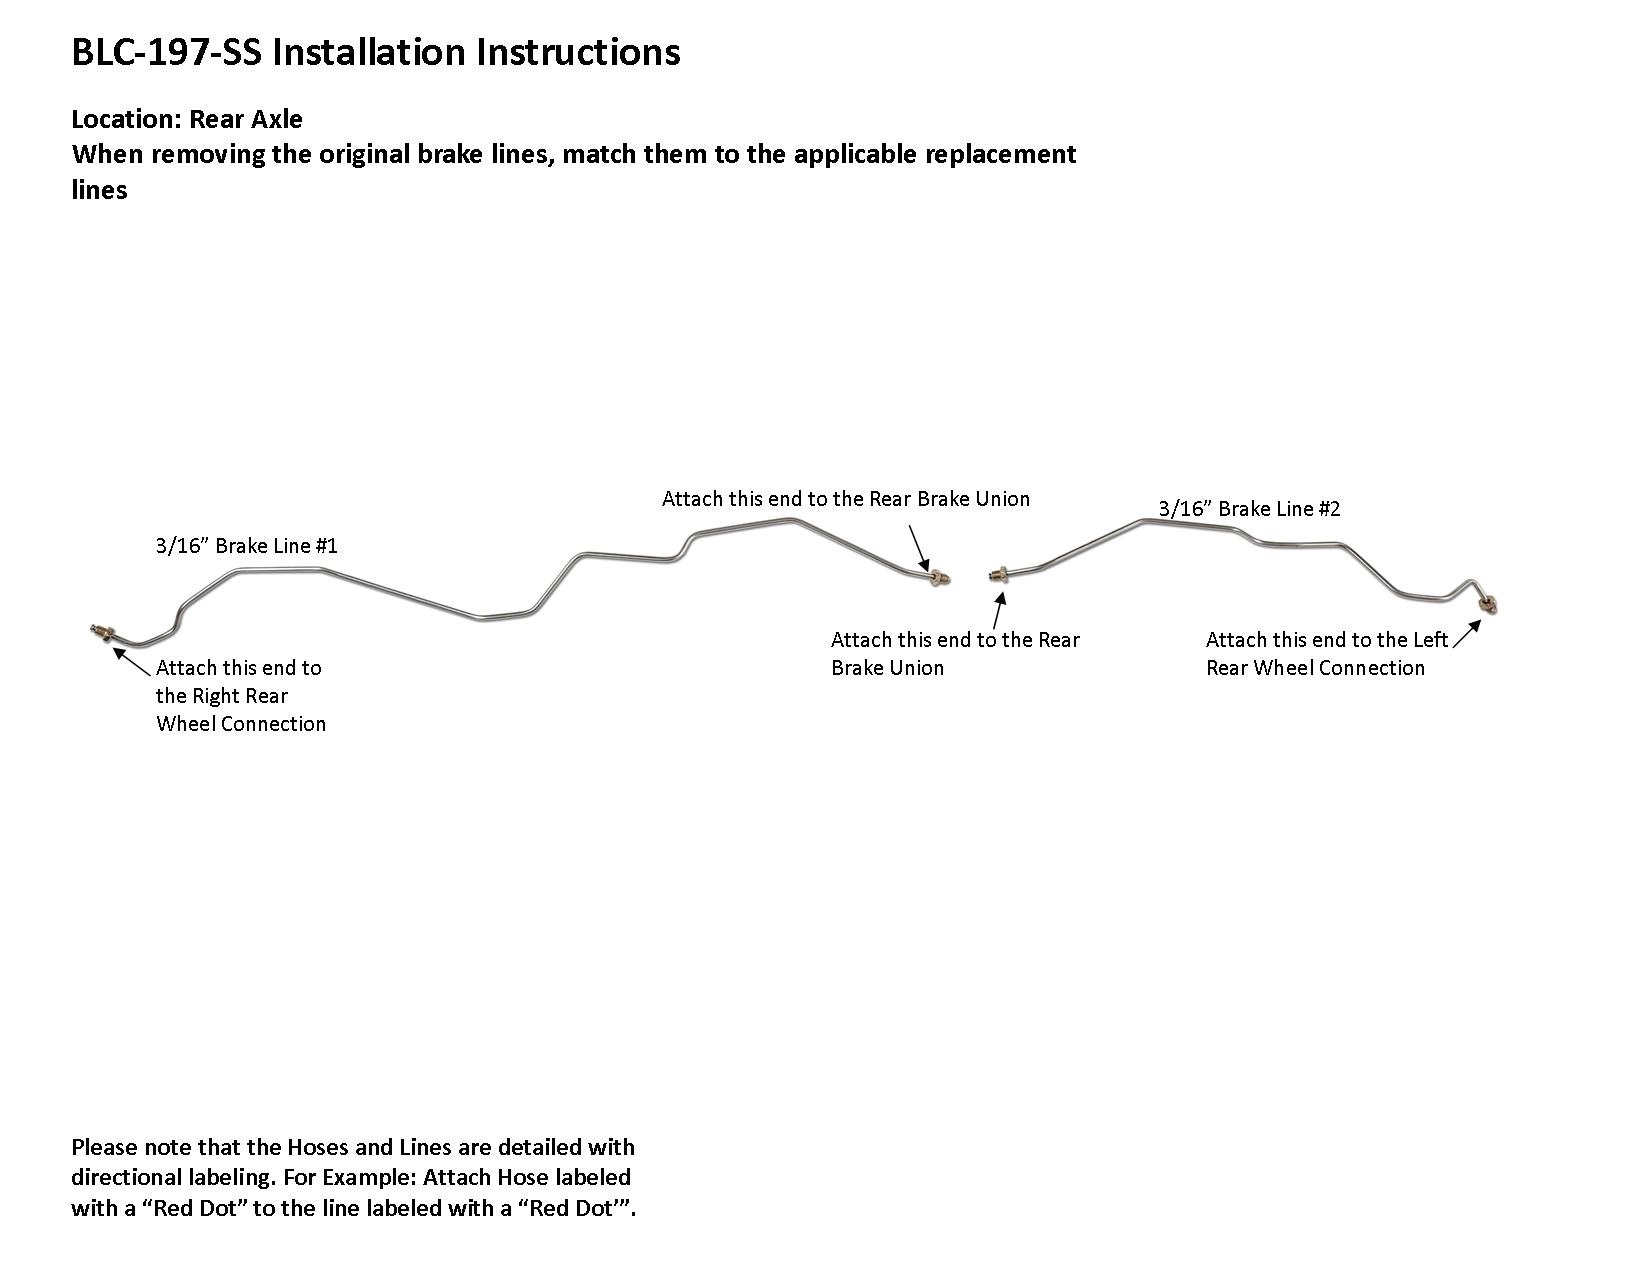 blc-197-ss-installation-instructions.jpg